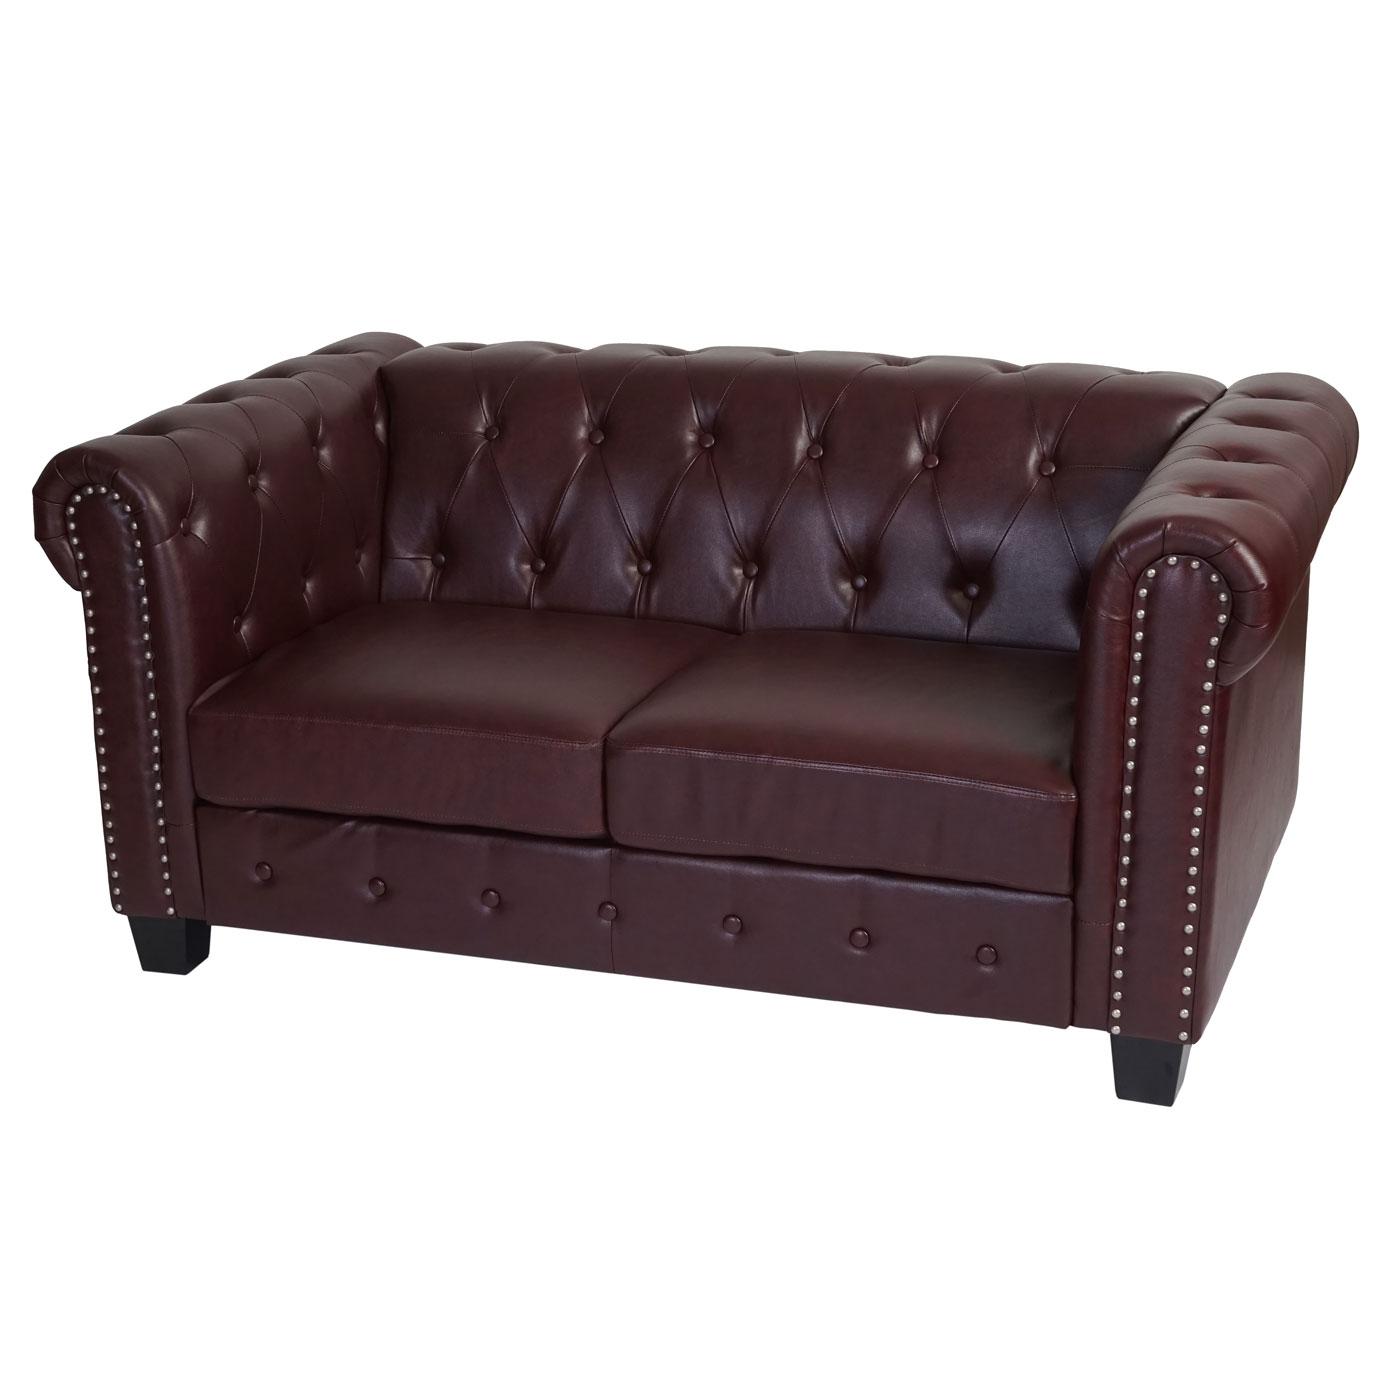 Sofa CHESTER, 2 Sitzer, klassisches und elegantes Design, Leder, quadratische Stuhlbeine, Farbe Burgunder